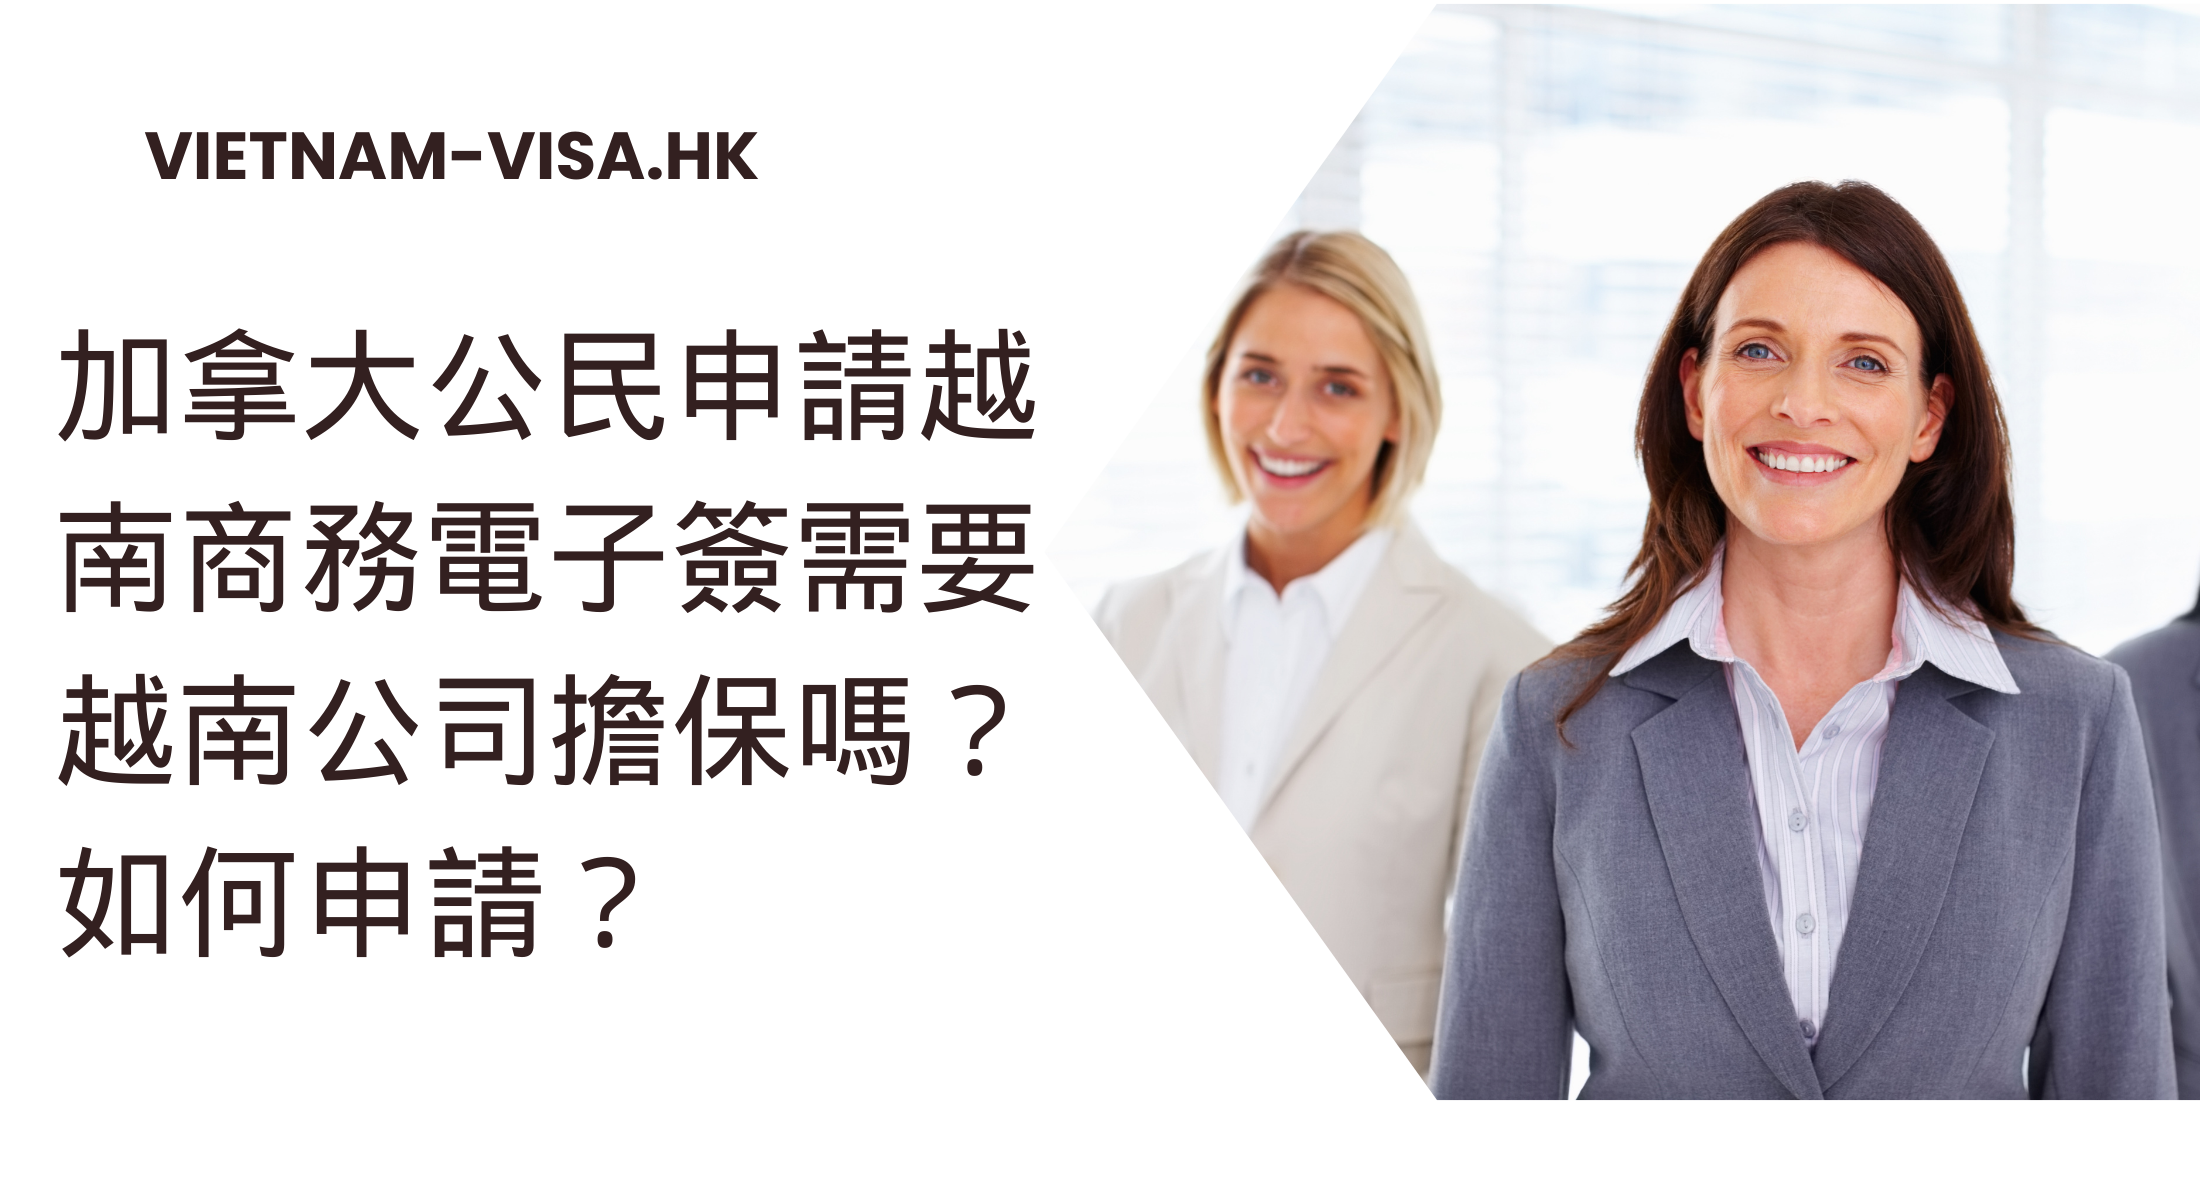 加拿大公民申請越南商務電子簽需要越南公司擔保嗎？ 如何申請？